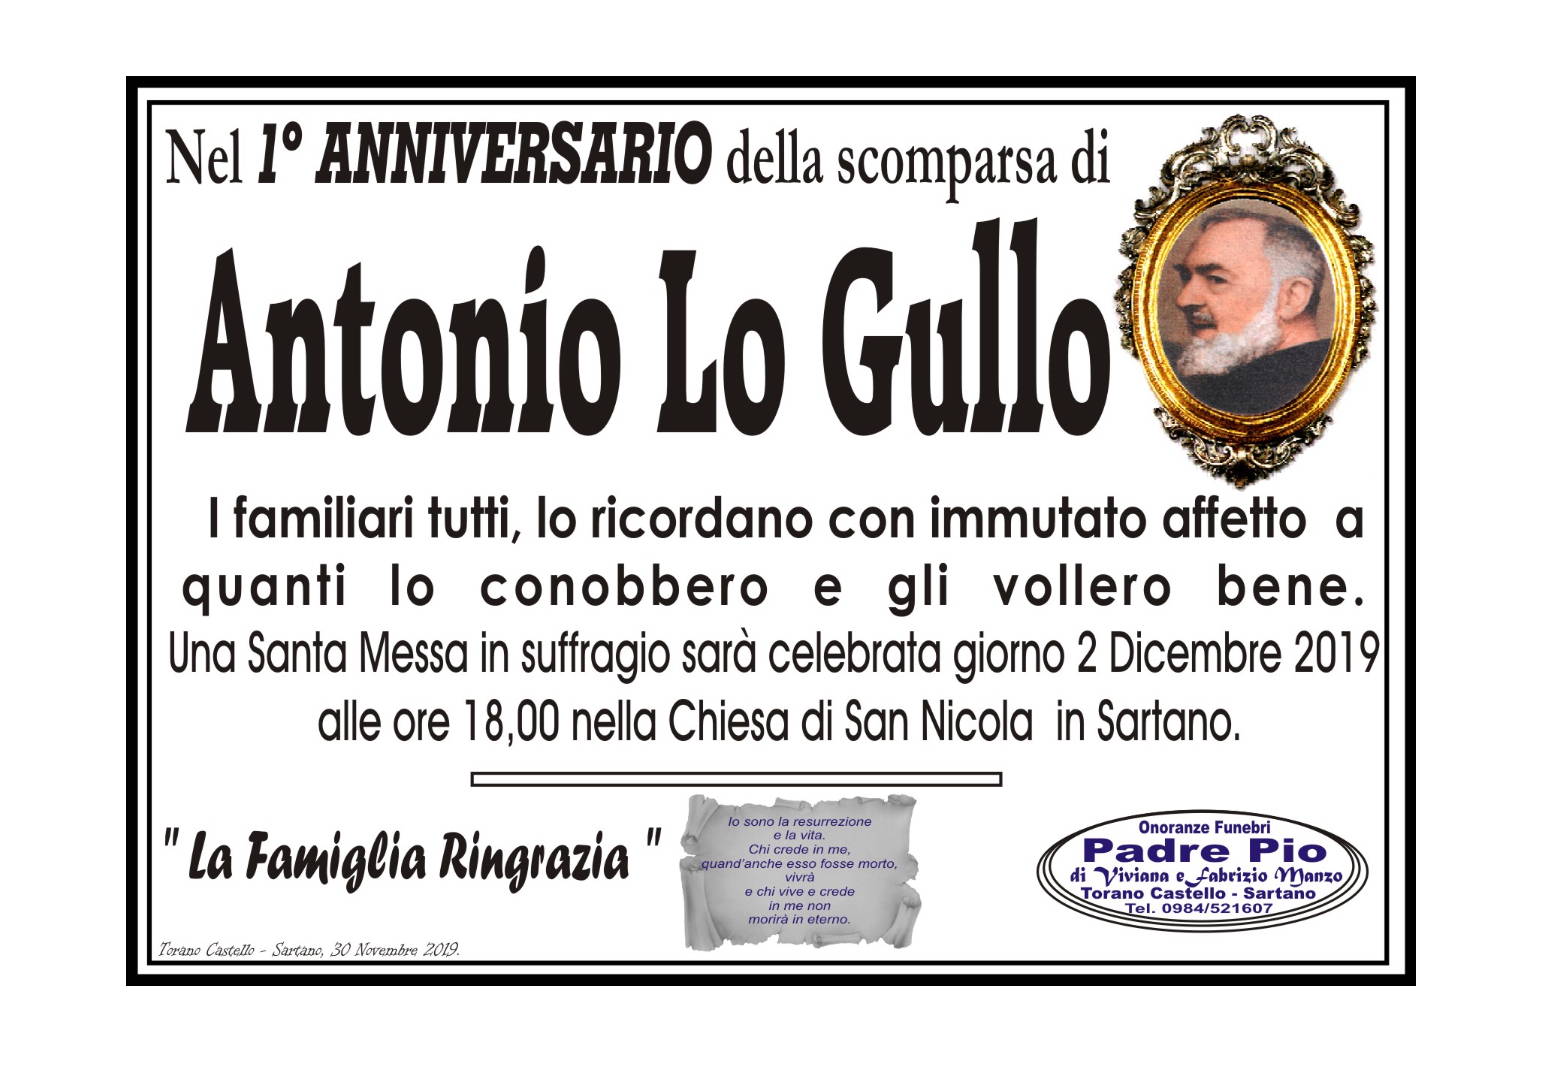 Antonio Lo Gullo